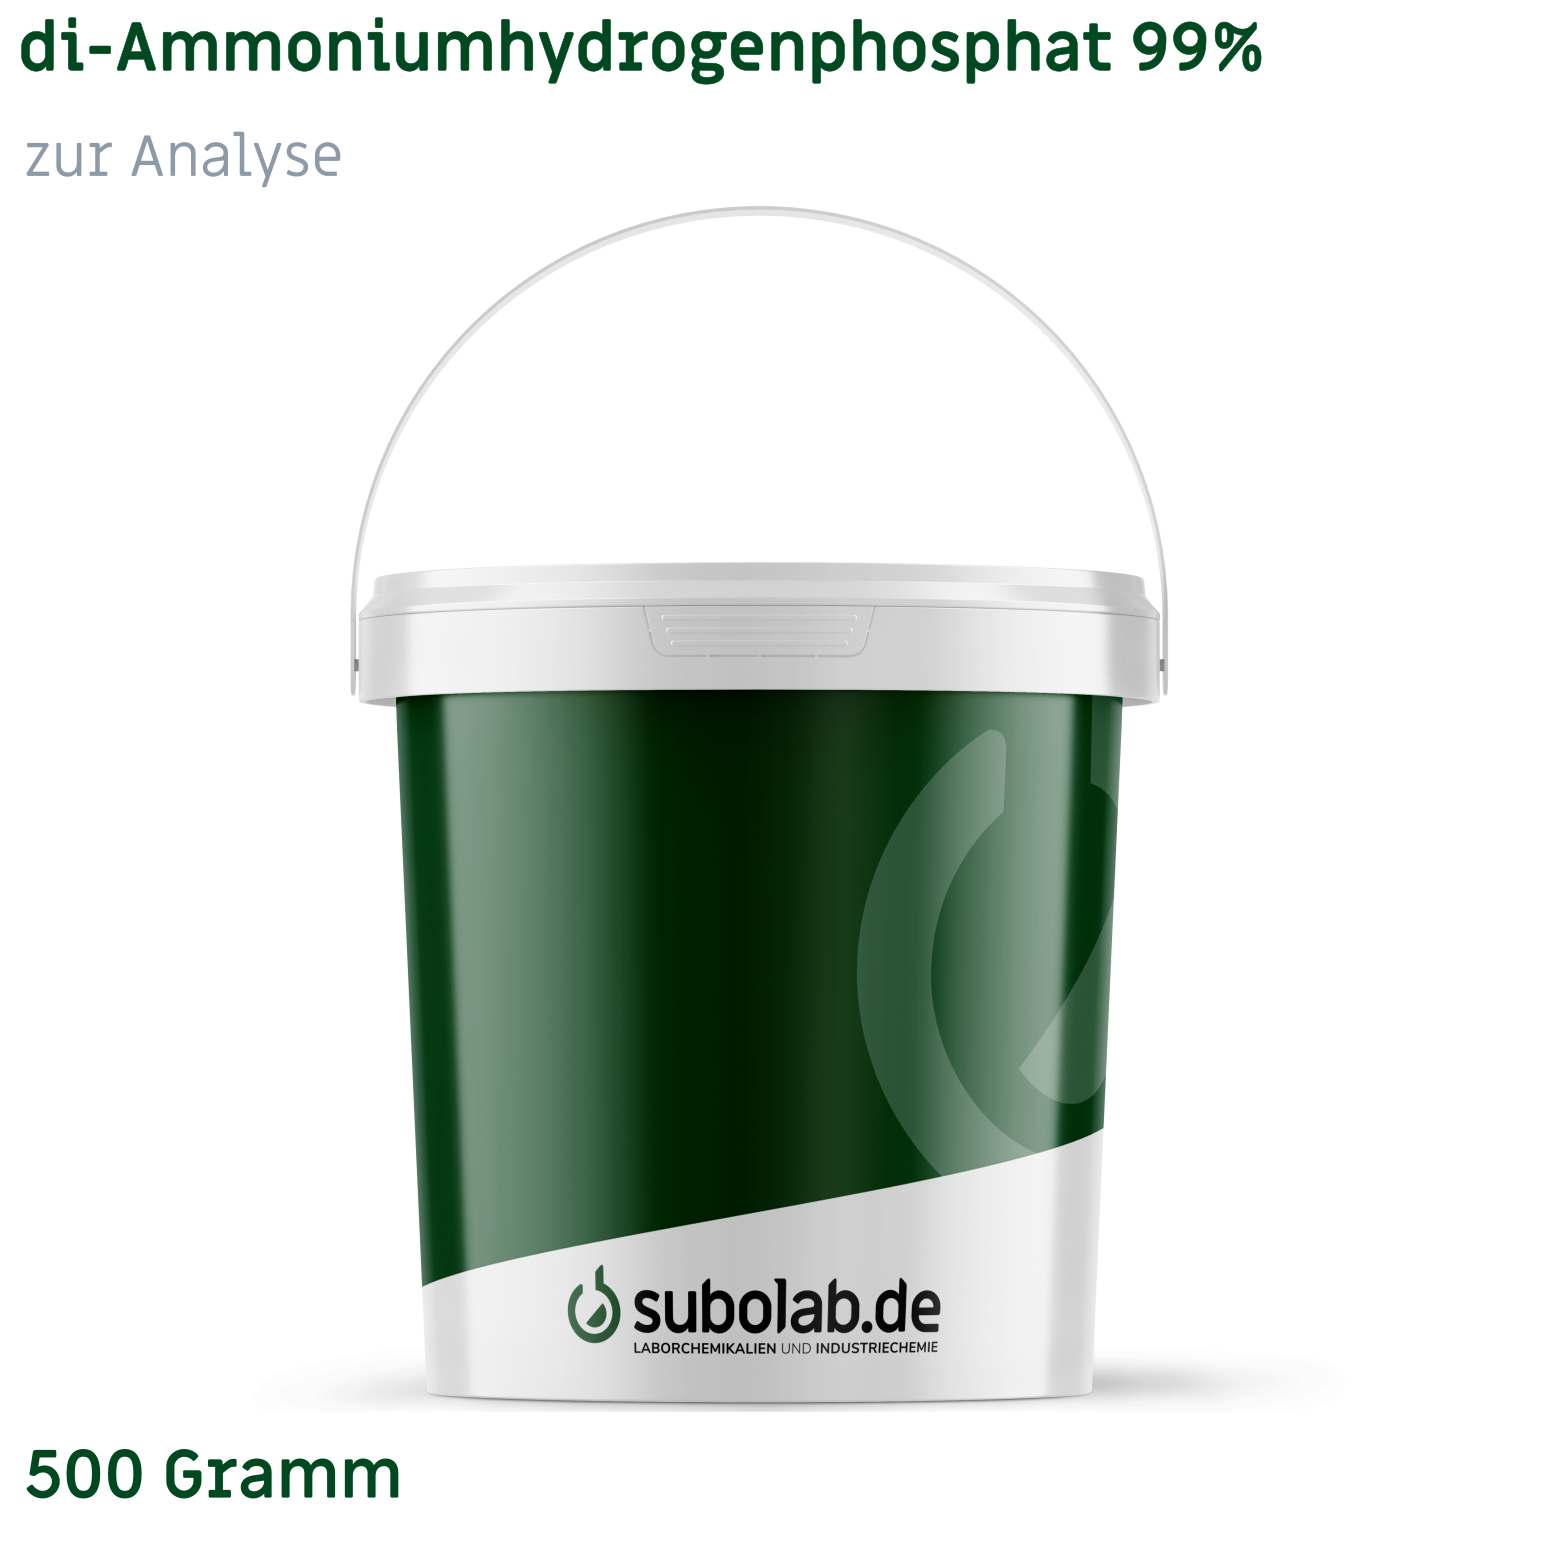 Bild von di-Ammoniumhydrogenphosphat 99% zur Analyse (500 Gramm)